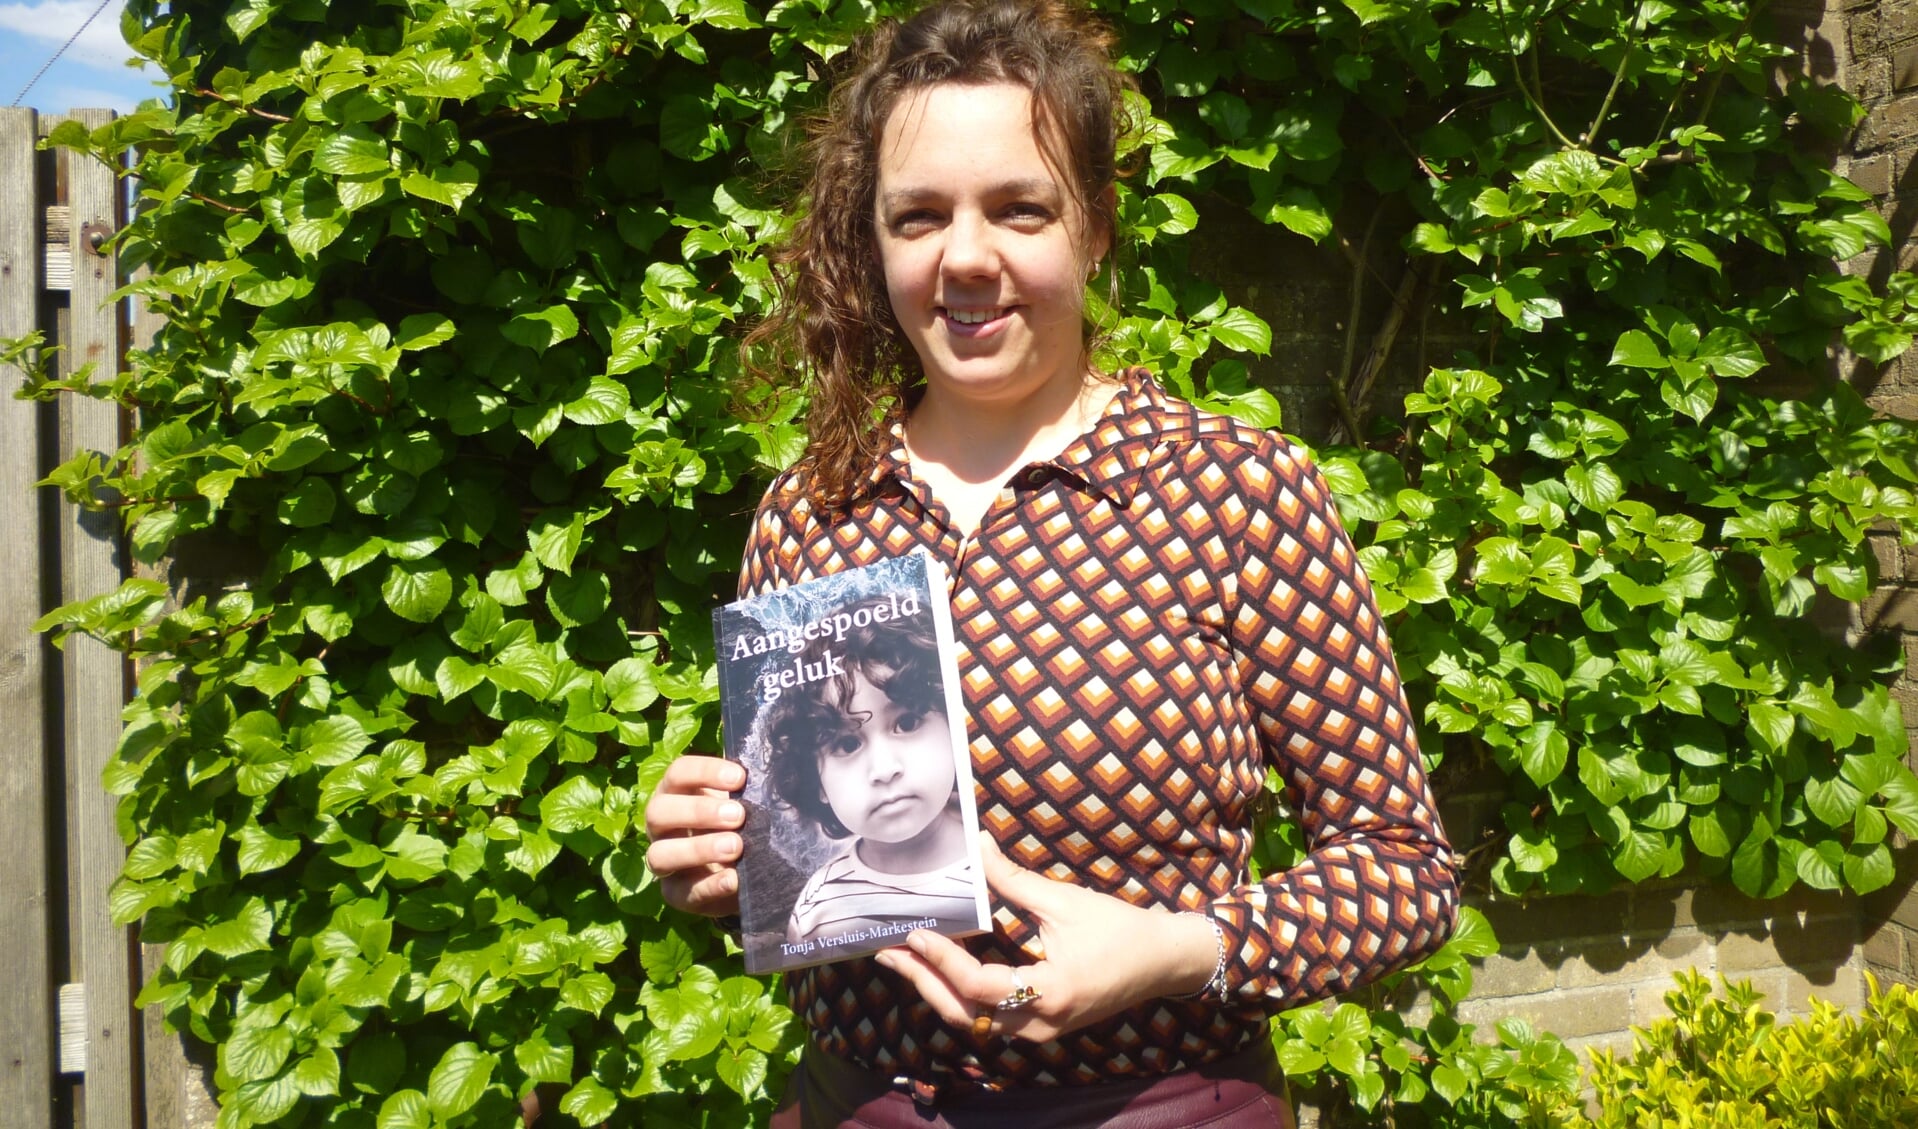 • Tonja Versluis met haar debuutroman Aangespoeld geluk.